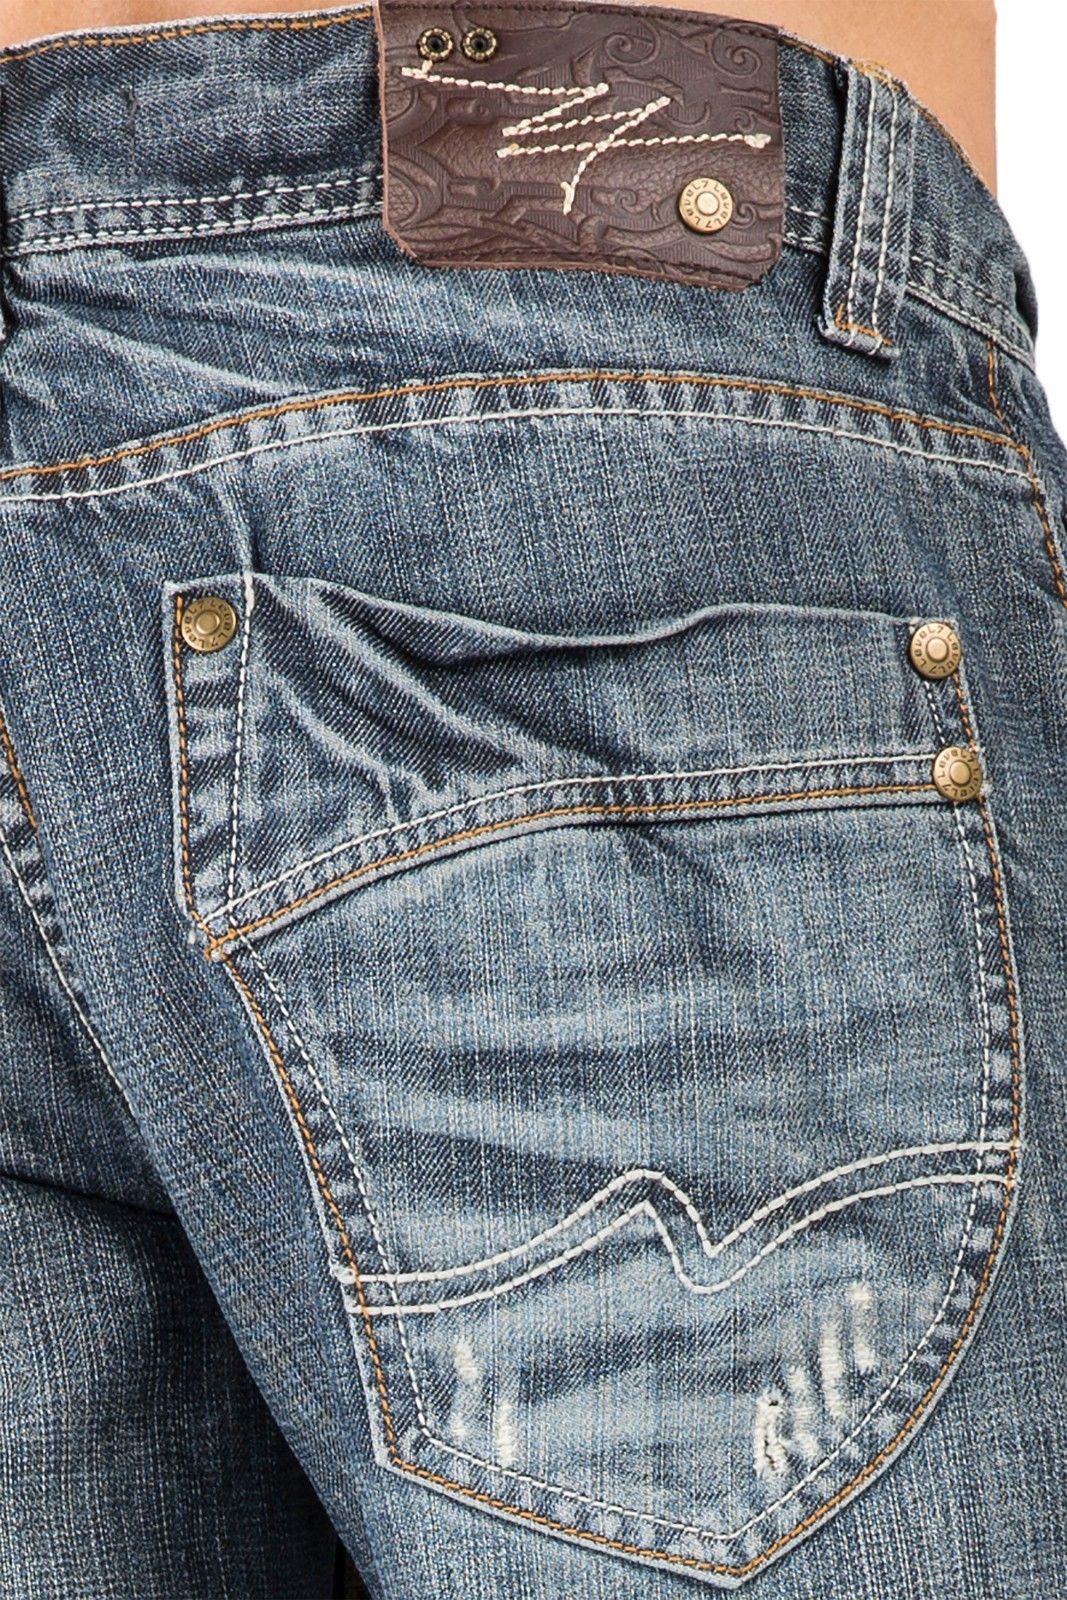 UNLIKELY: Ginger Jeans: Back Pocket Design Inspiration